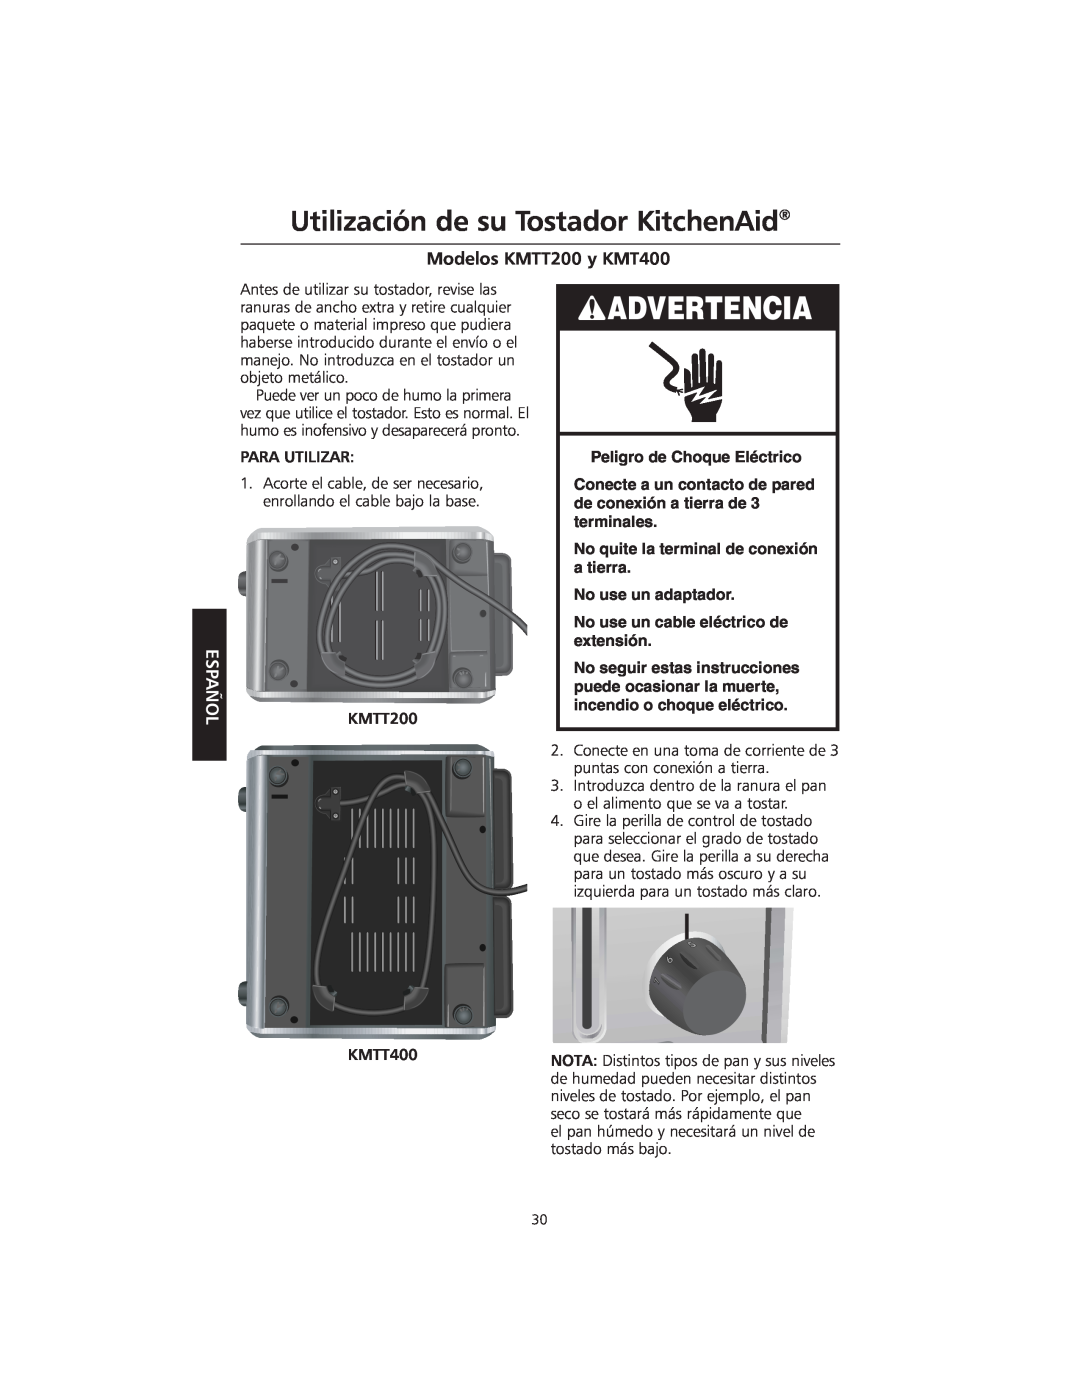 KitchenAid manual Utilización de su Tostador KitchenAid, Advertencia, Modelos KMTT200 y KMT400, Español 